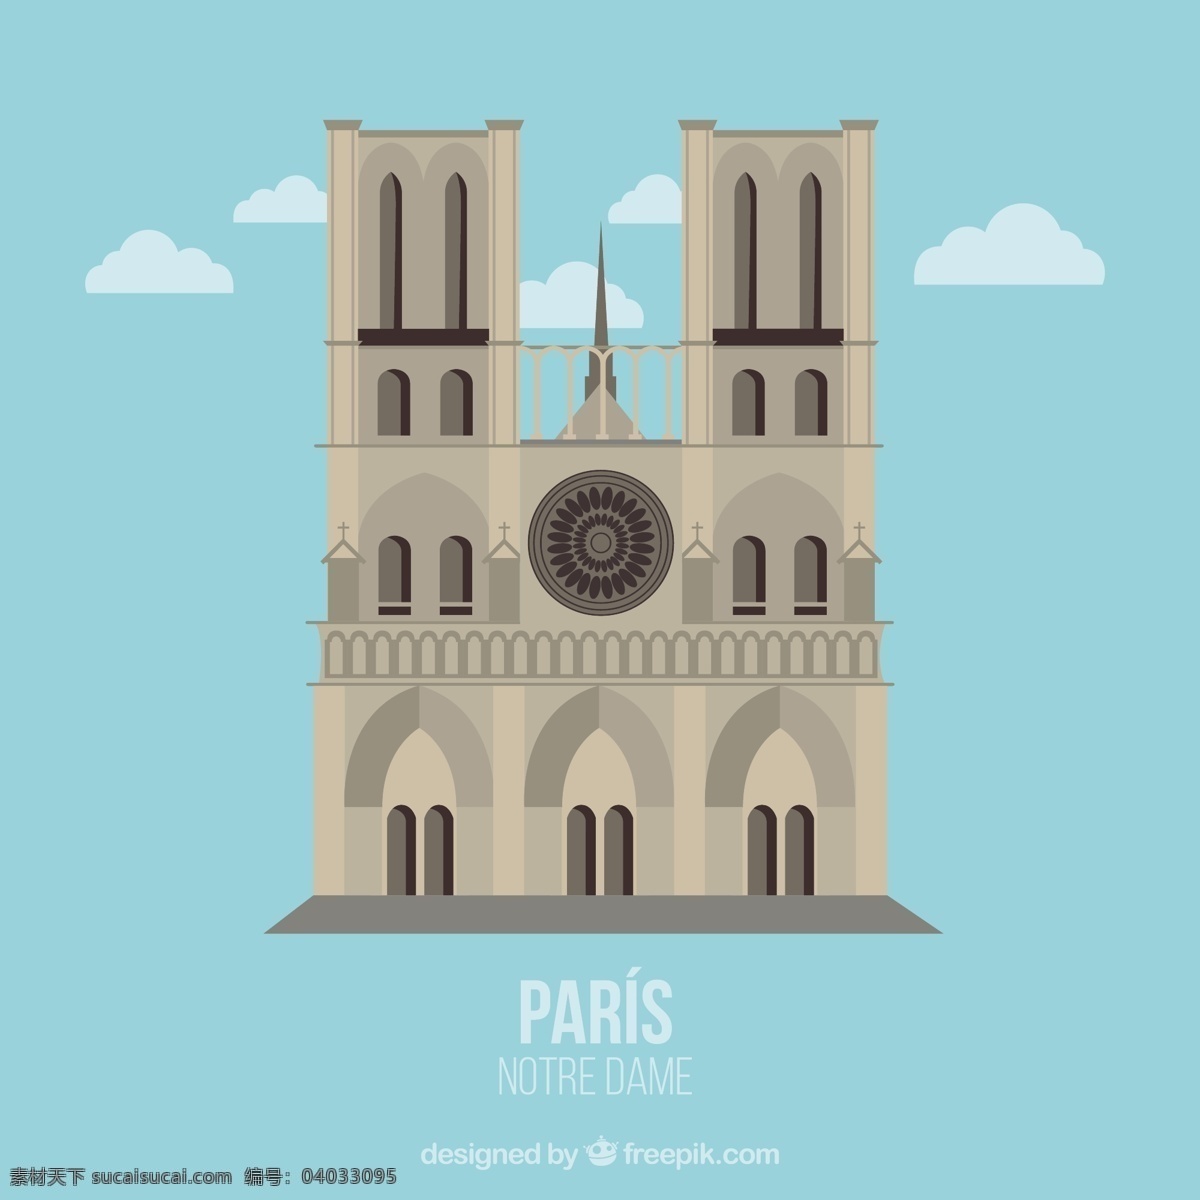 圣母院的插图 巴黎 教堂 小镇 法国 插图 旅游 纪念碑 圣母 catolic 青色 天蓝色